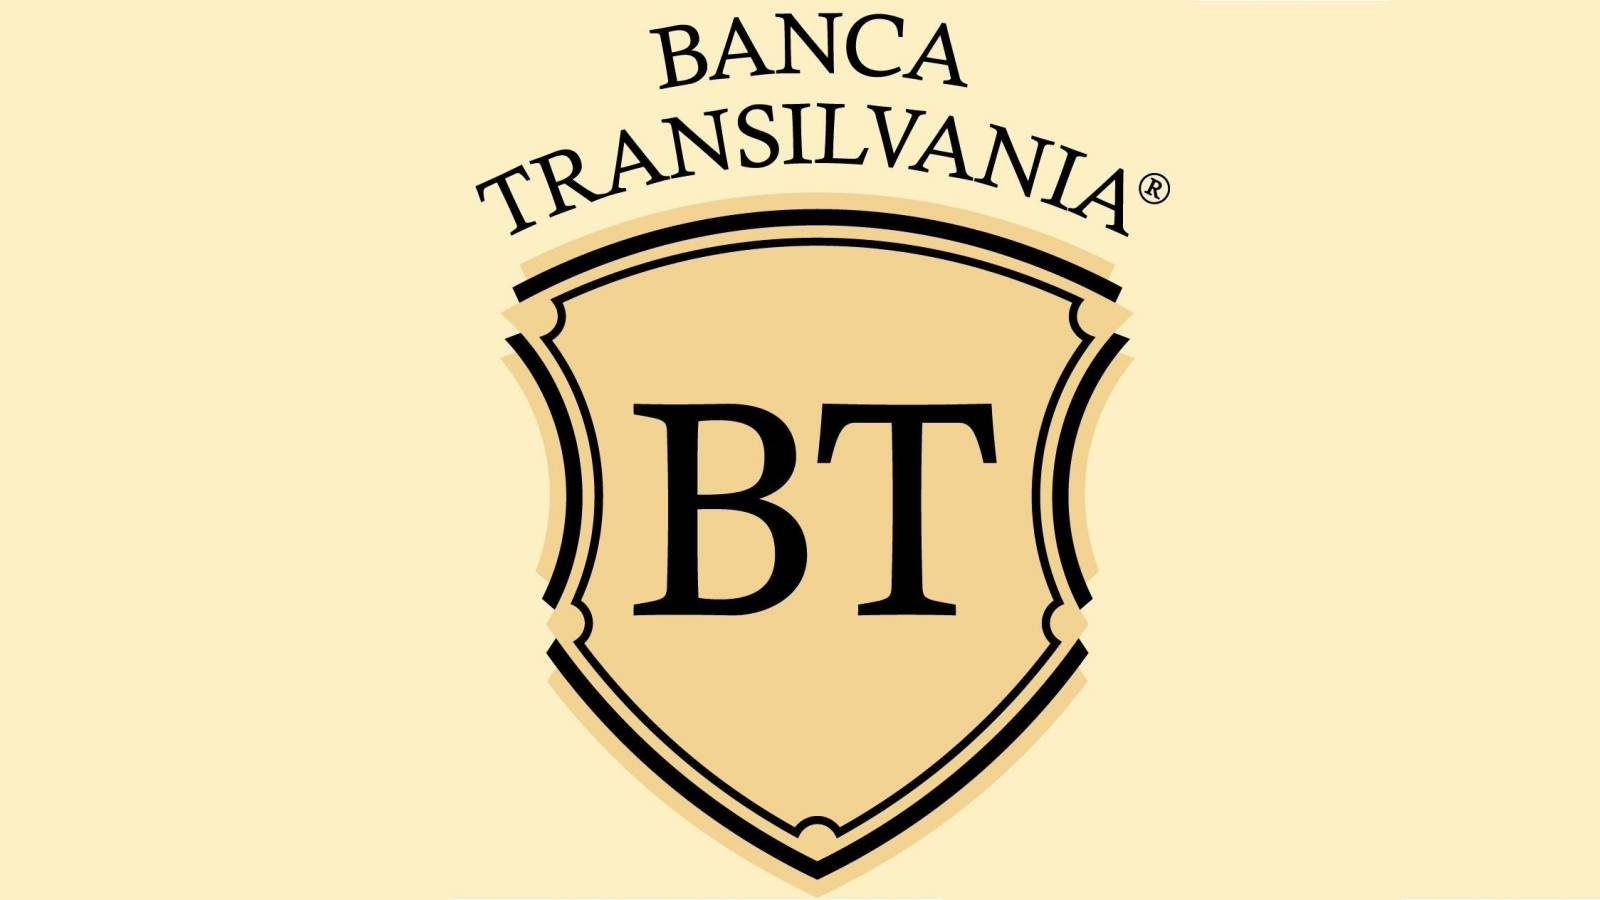 Offizielle LAST-MINUTE-Mitteilung der BANCA Transilvania mit einer wichtigen Ankündigung für rumänische Kunden